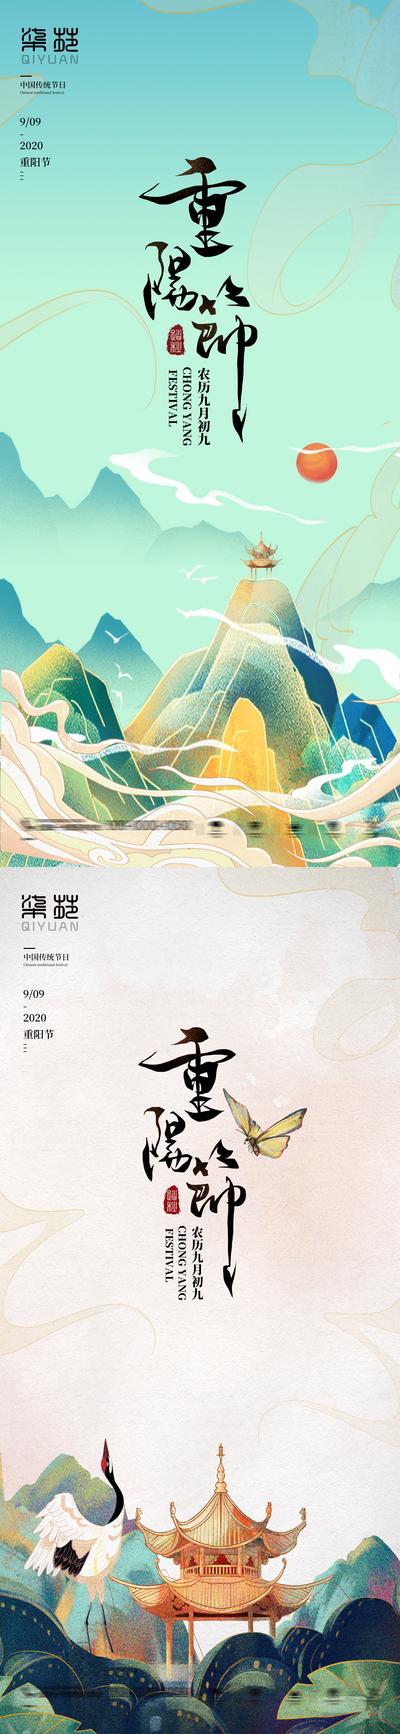 南门网 海报  中国传统节日 重阳节  中国风  仙鹤 系列